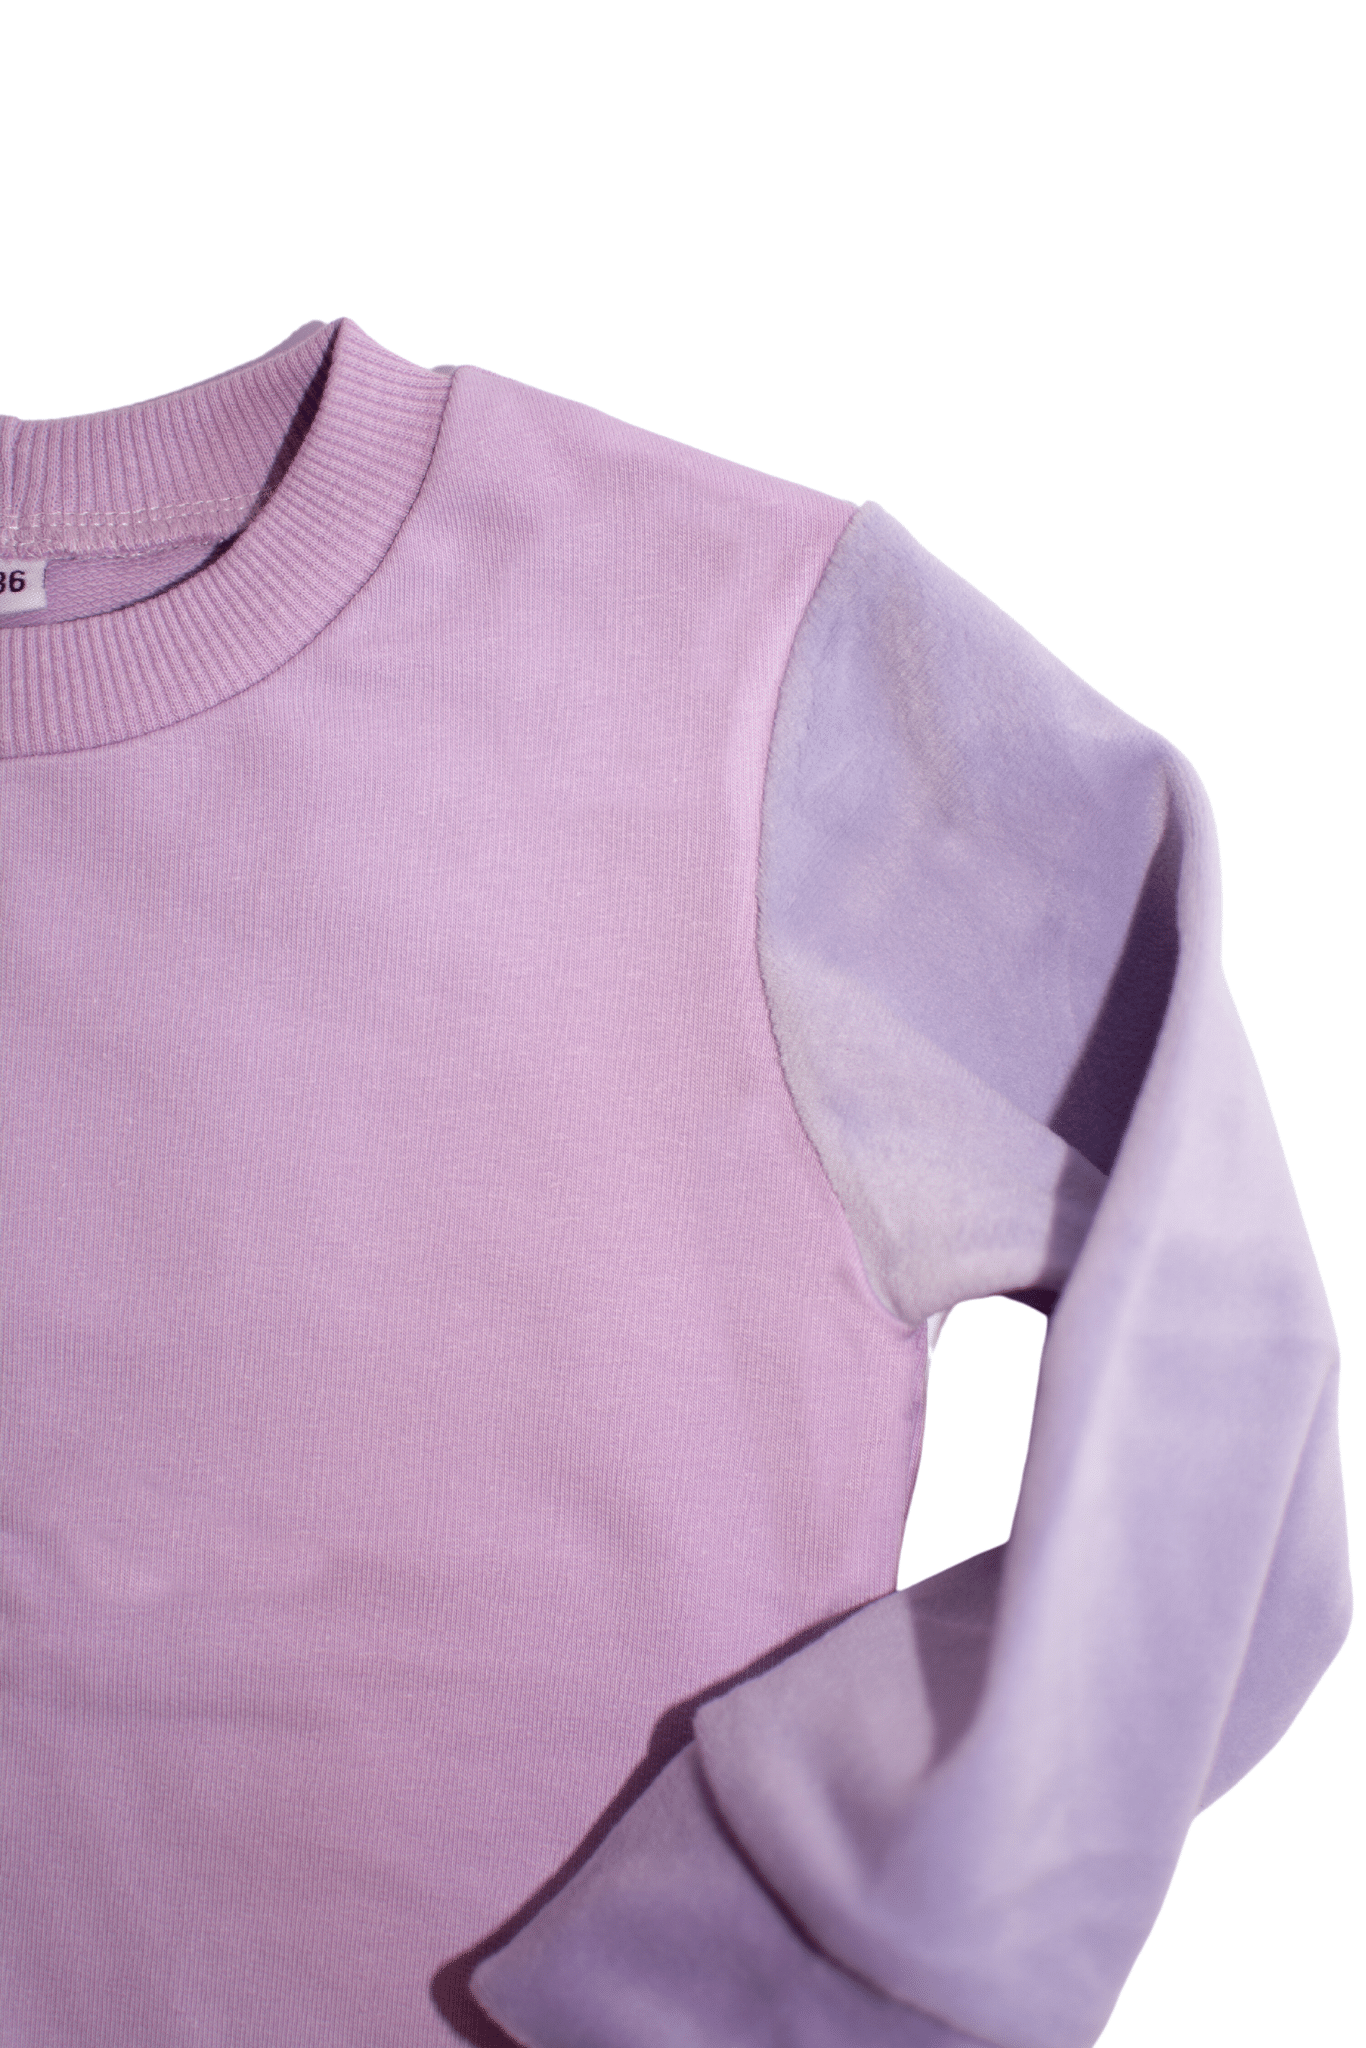 Vaikiškas megztinis su soft veliūru | Paskutinis | 86 dydis - Stiliaus detalė